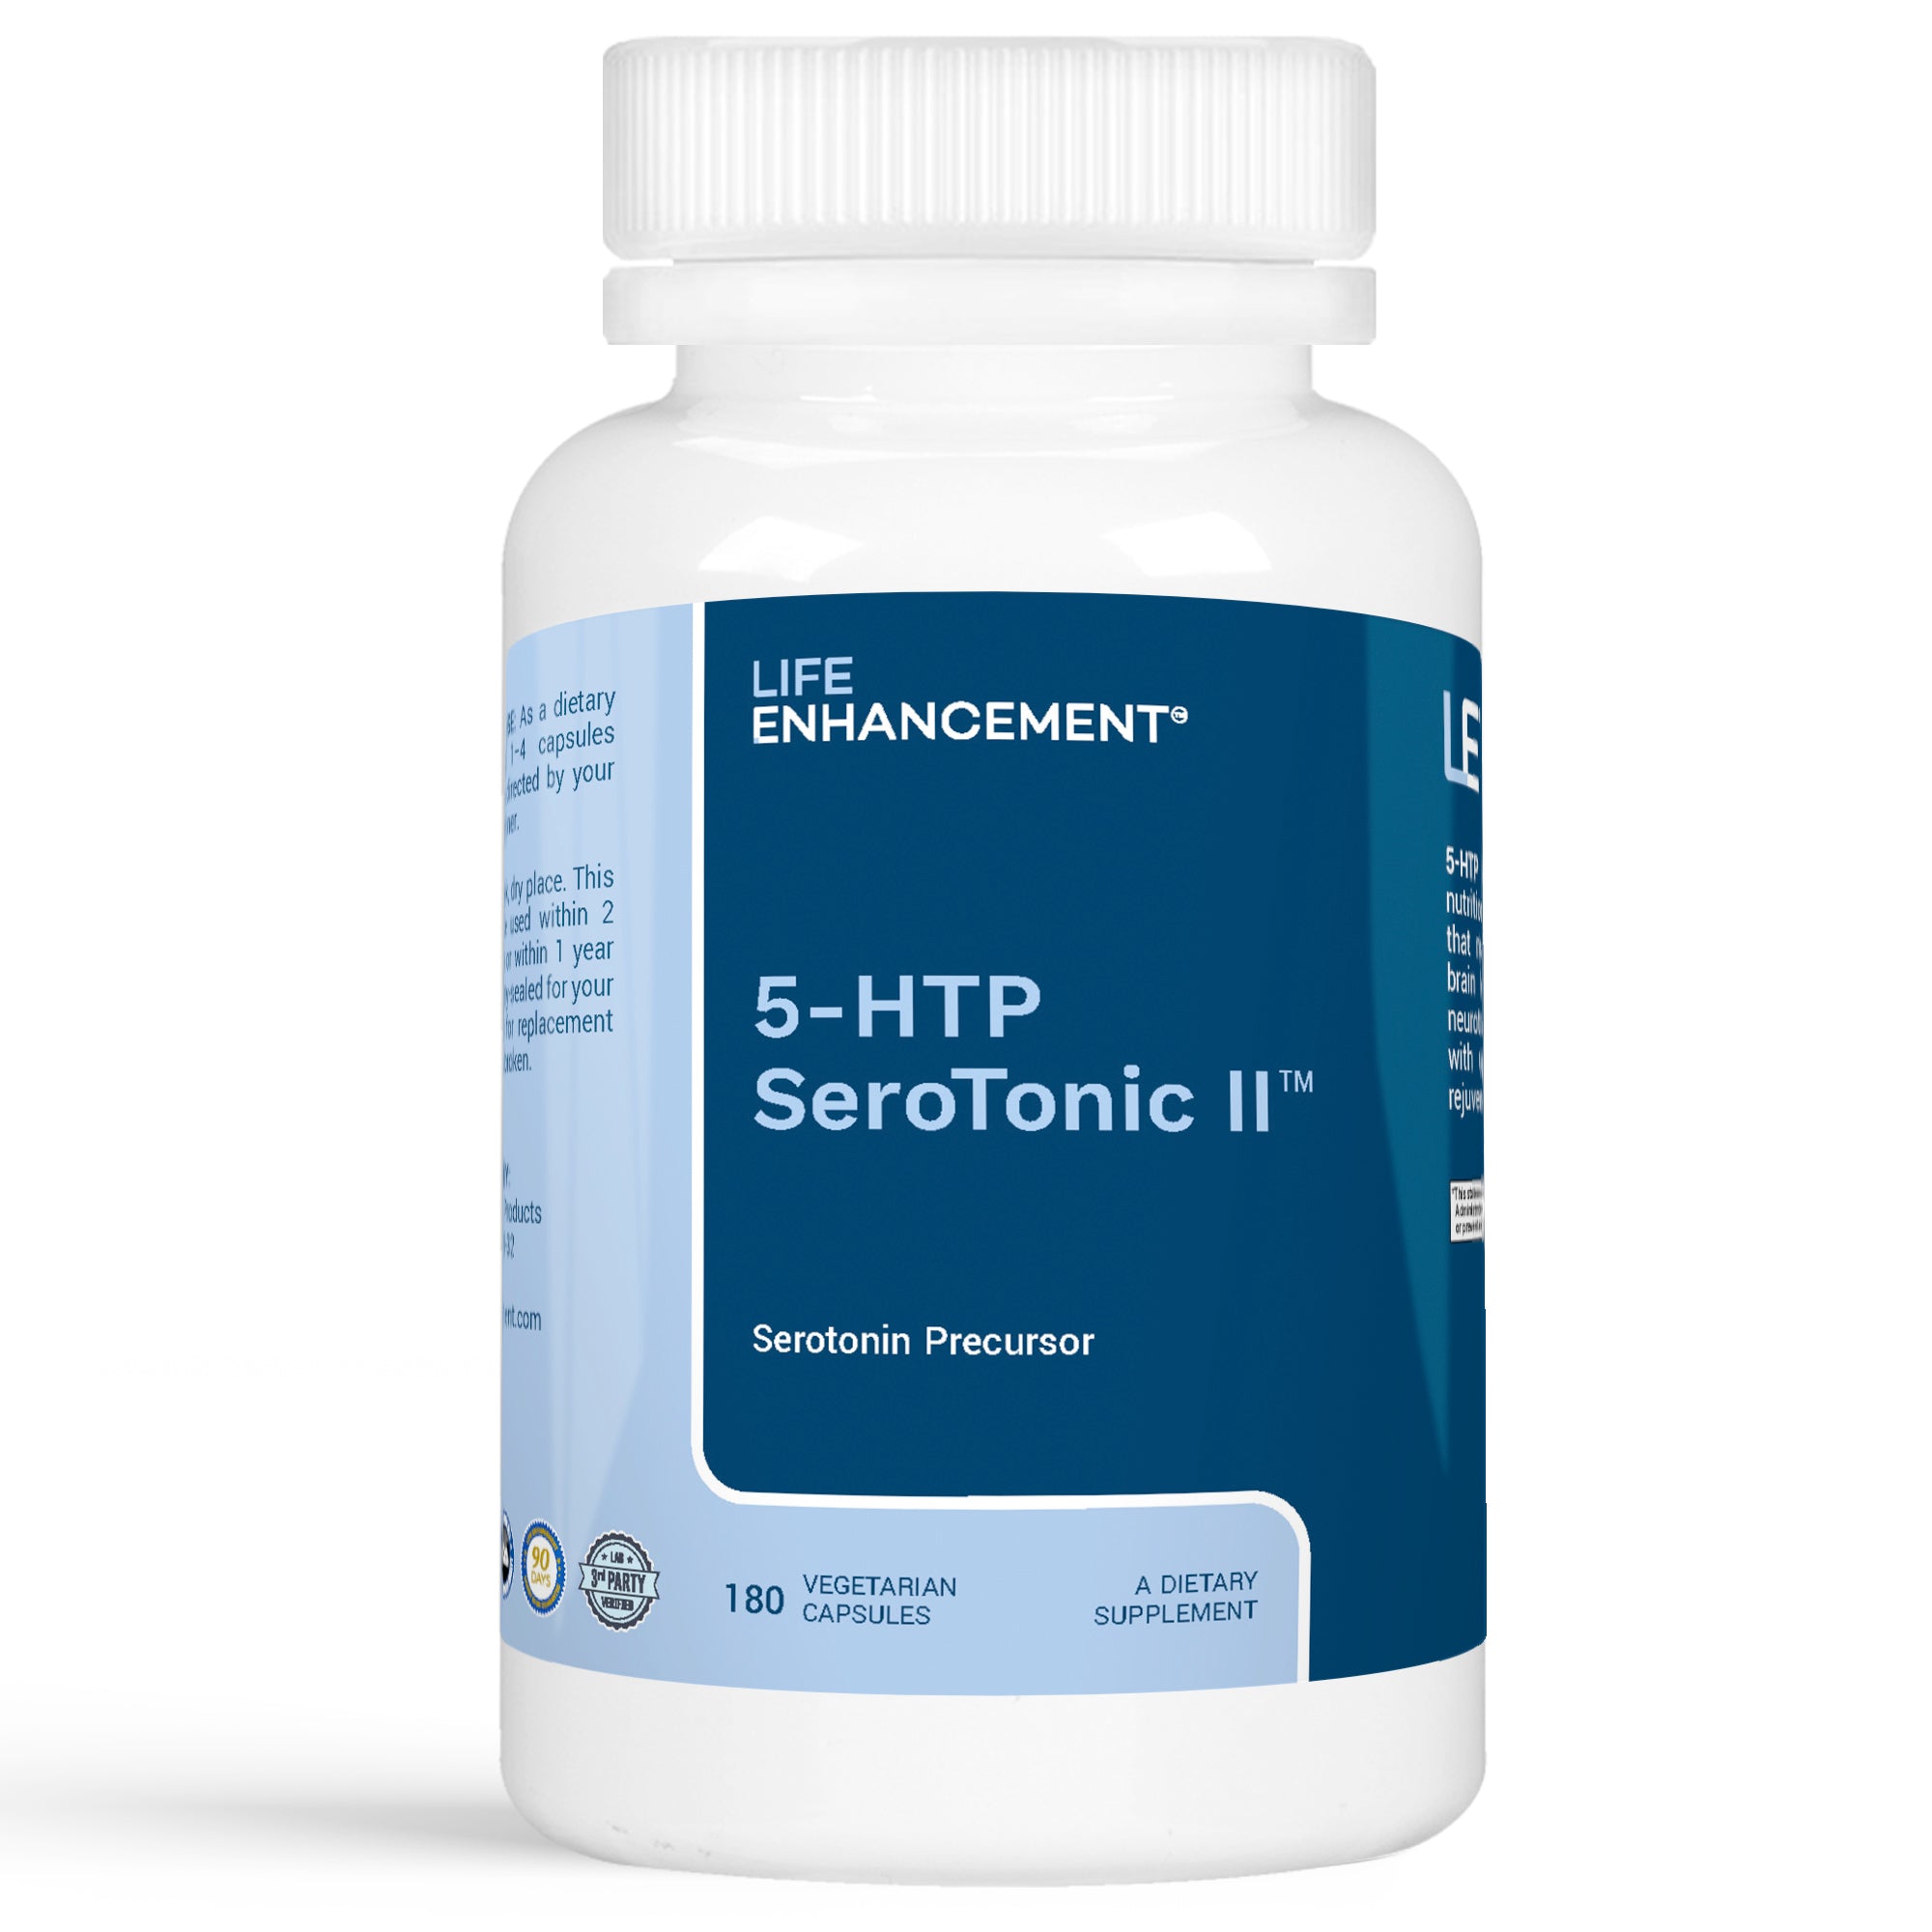 5-HTP SeroTonic II™